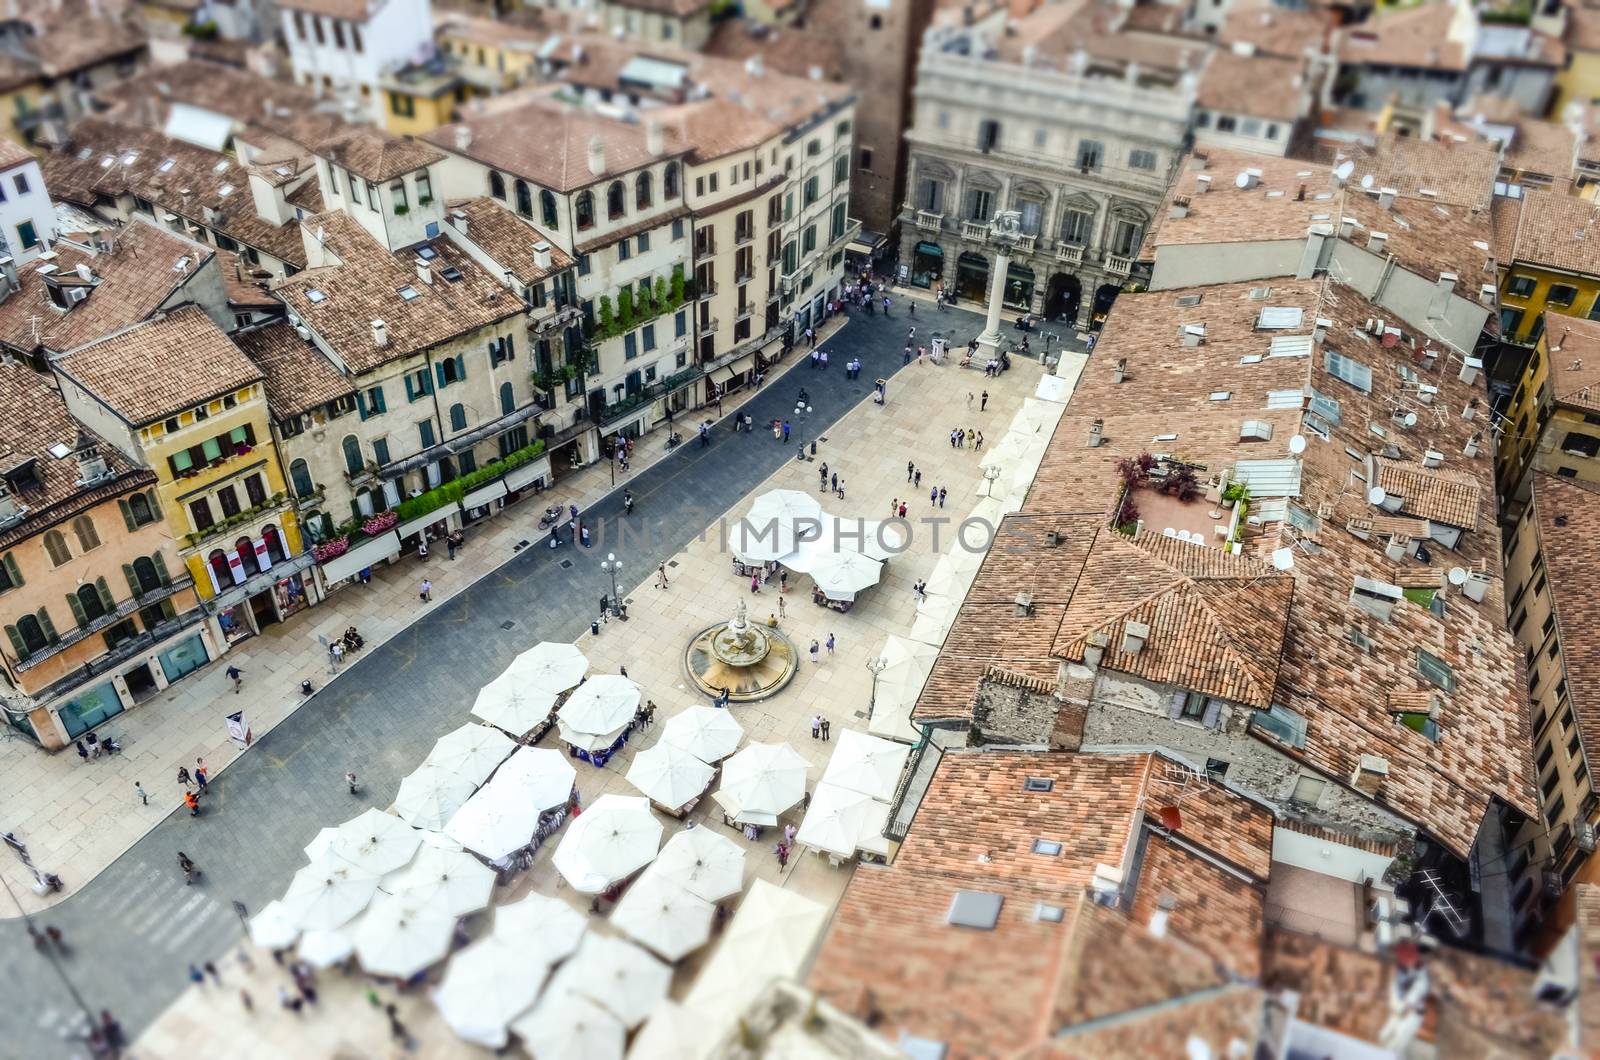 View over Piazza delle Erbe (Market's square), Verona by marcorubino